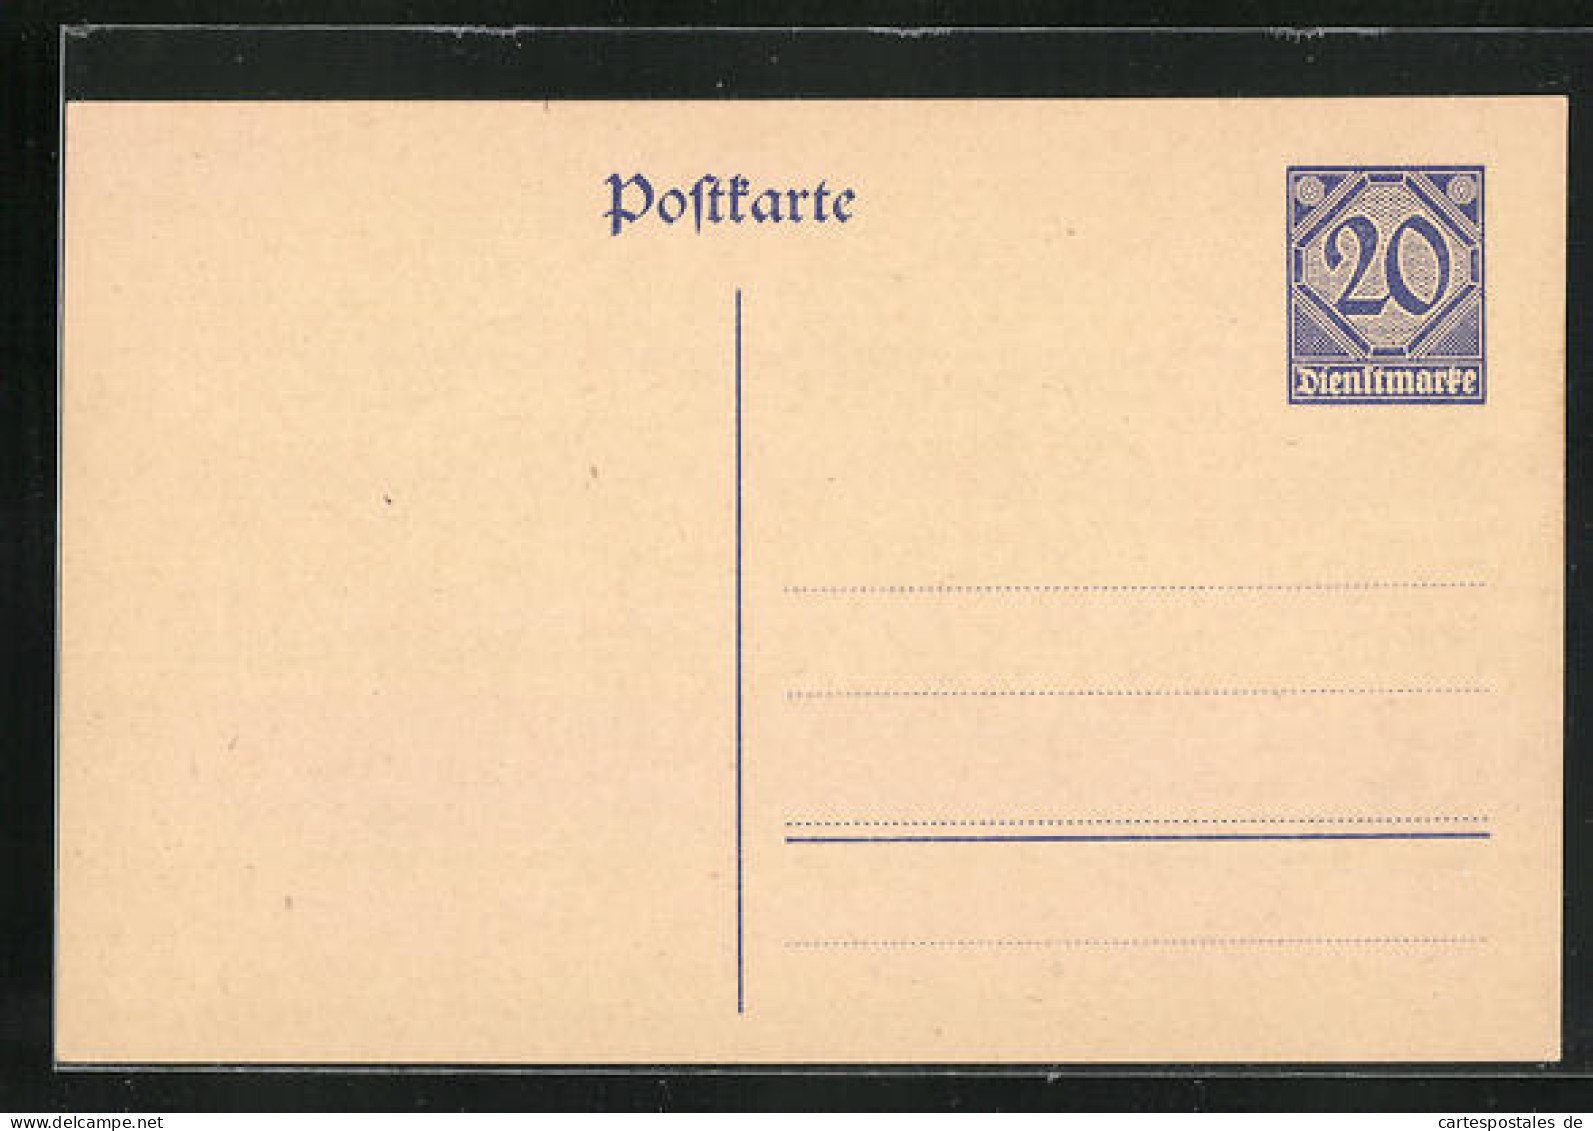 AK Ganzsache Dienstpost, Dienstmarke 20  - Briefmarken (Abbildungen)